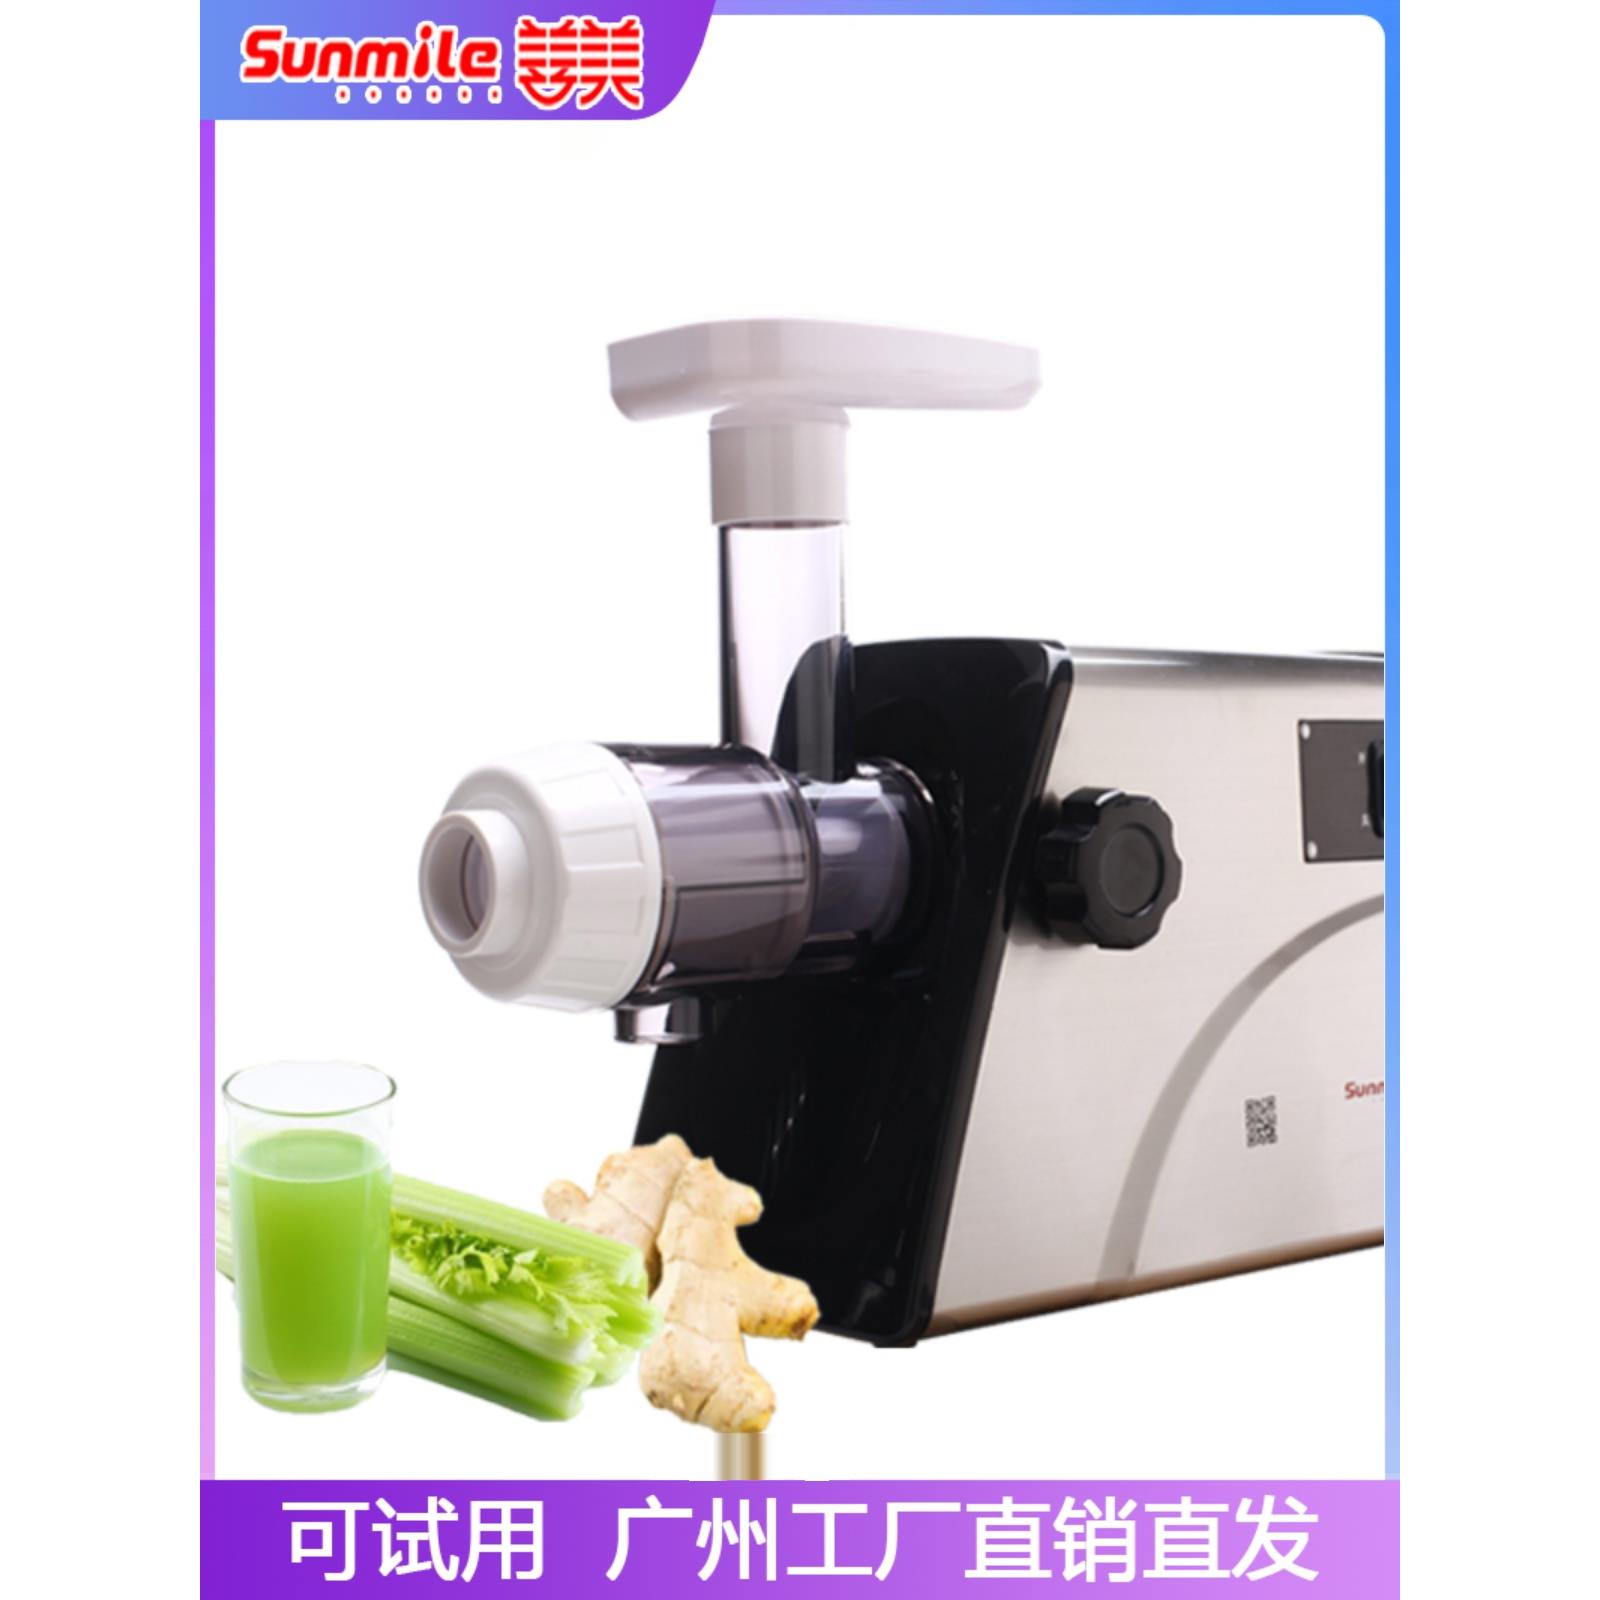 Sunmile/善美G33b家用电动低速榨汁机生姜西芹水果蔬菜原汁机